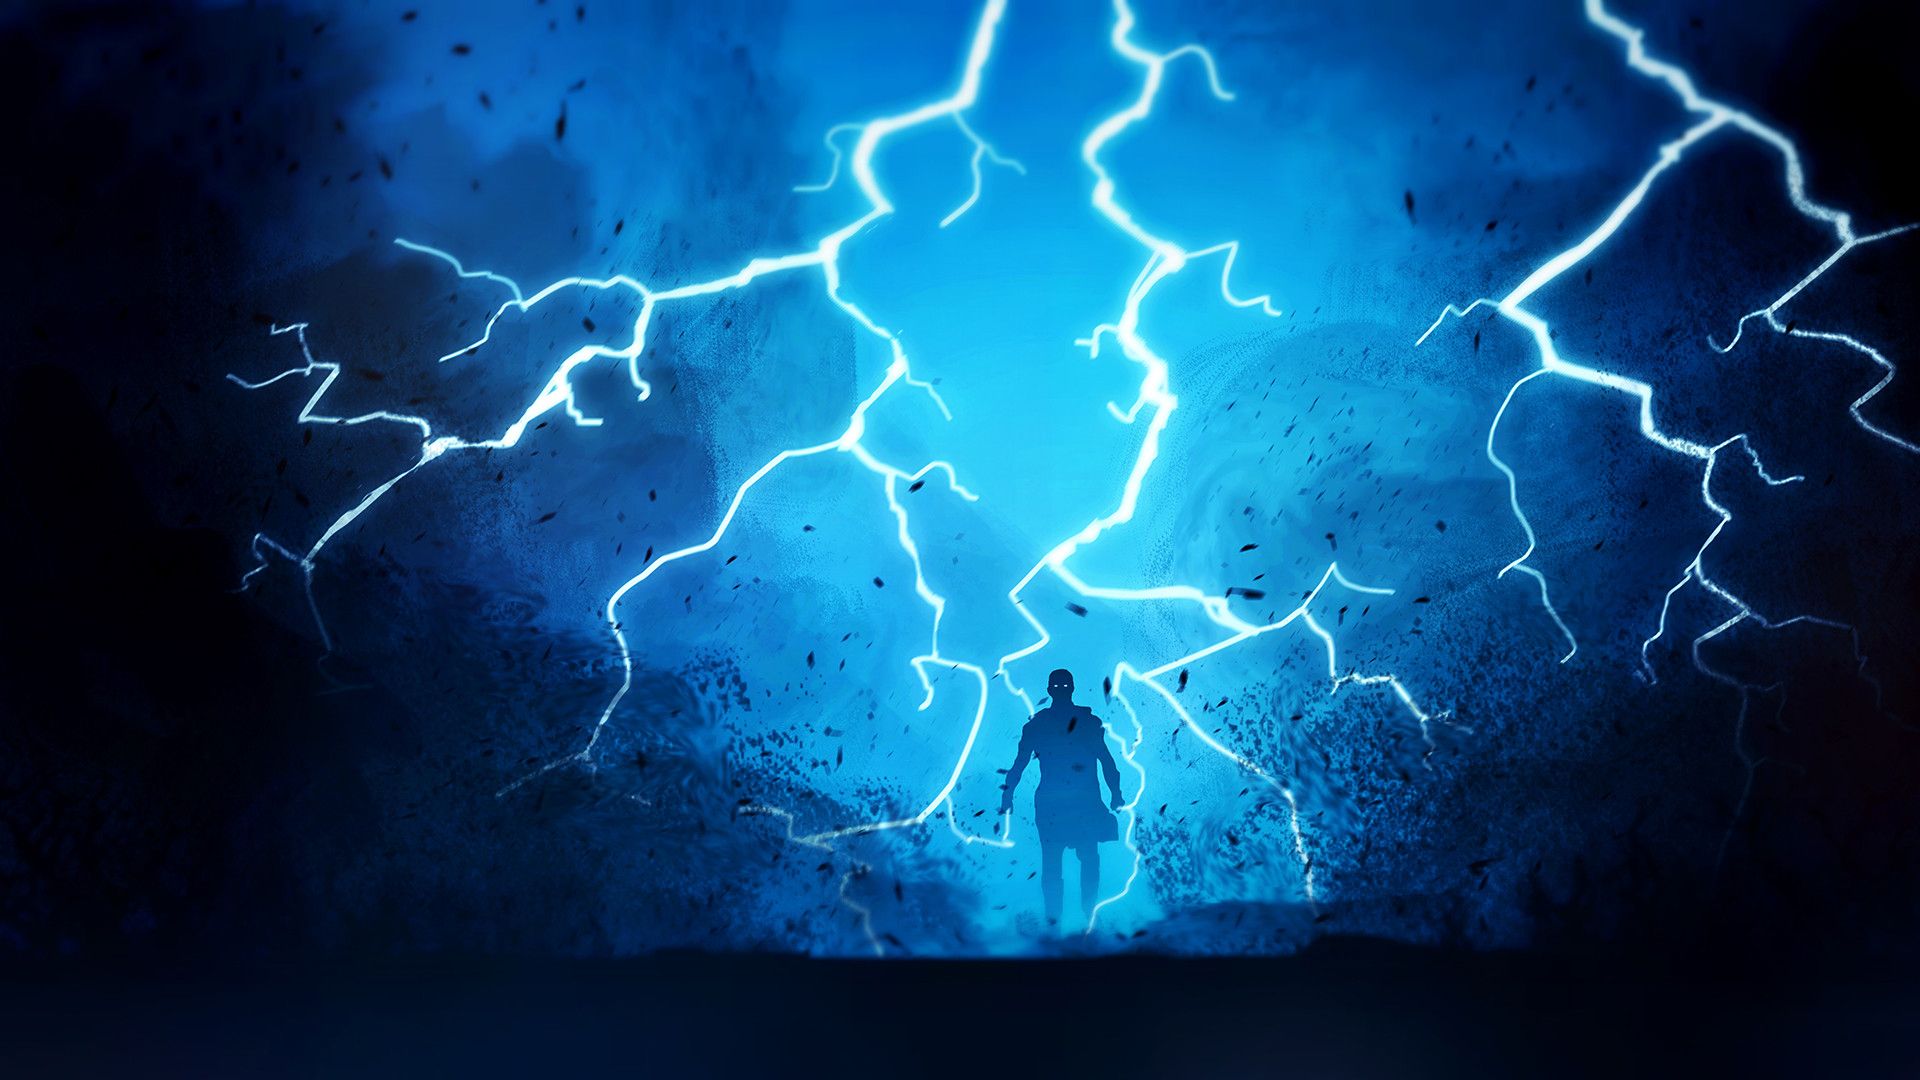 Warrior Fantasy Lightning, HD Artist, 4k Wallpaper, Image